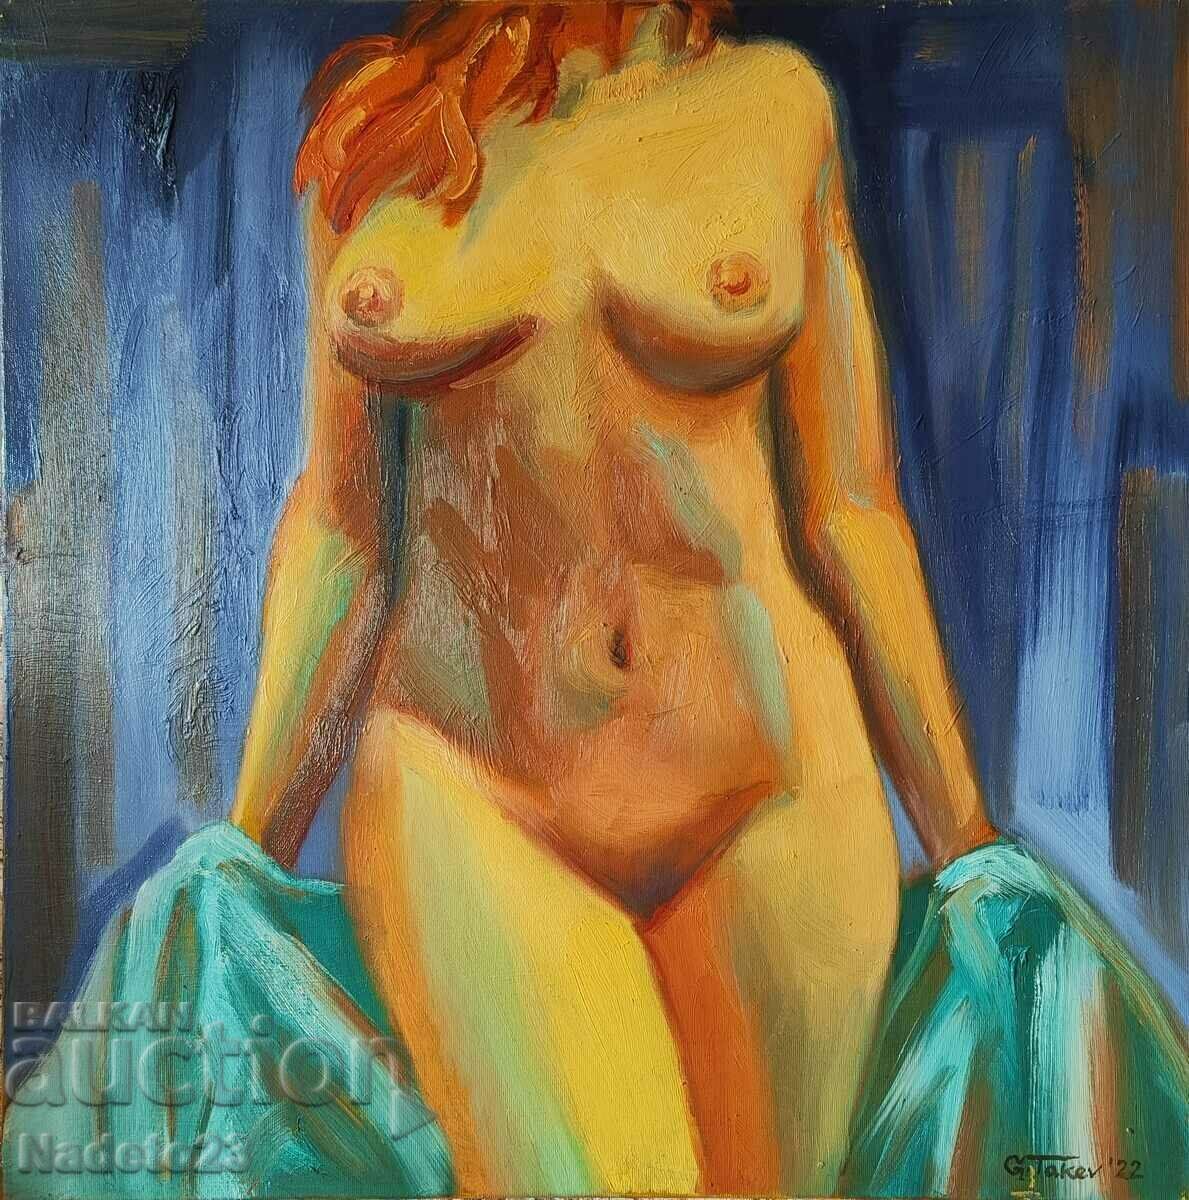 Georgi Takev - Act, 70x70, oil on canvas